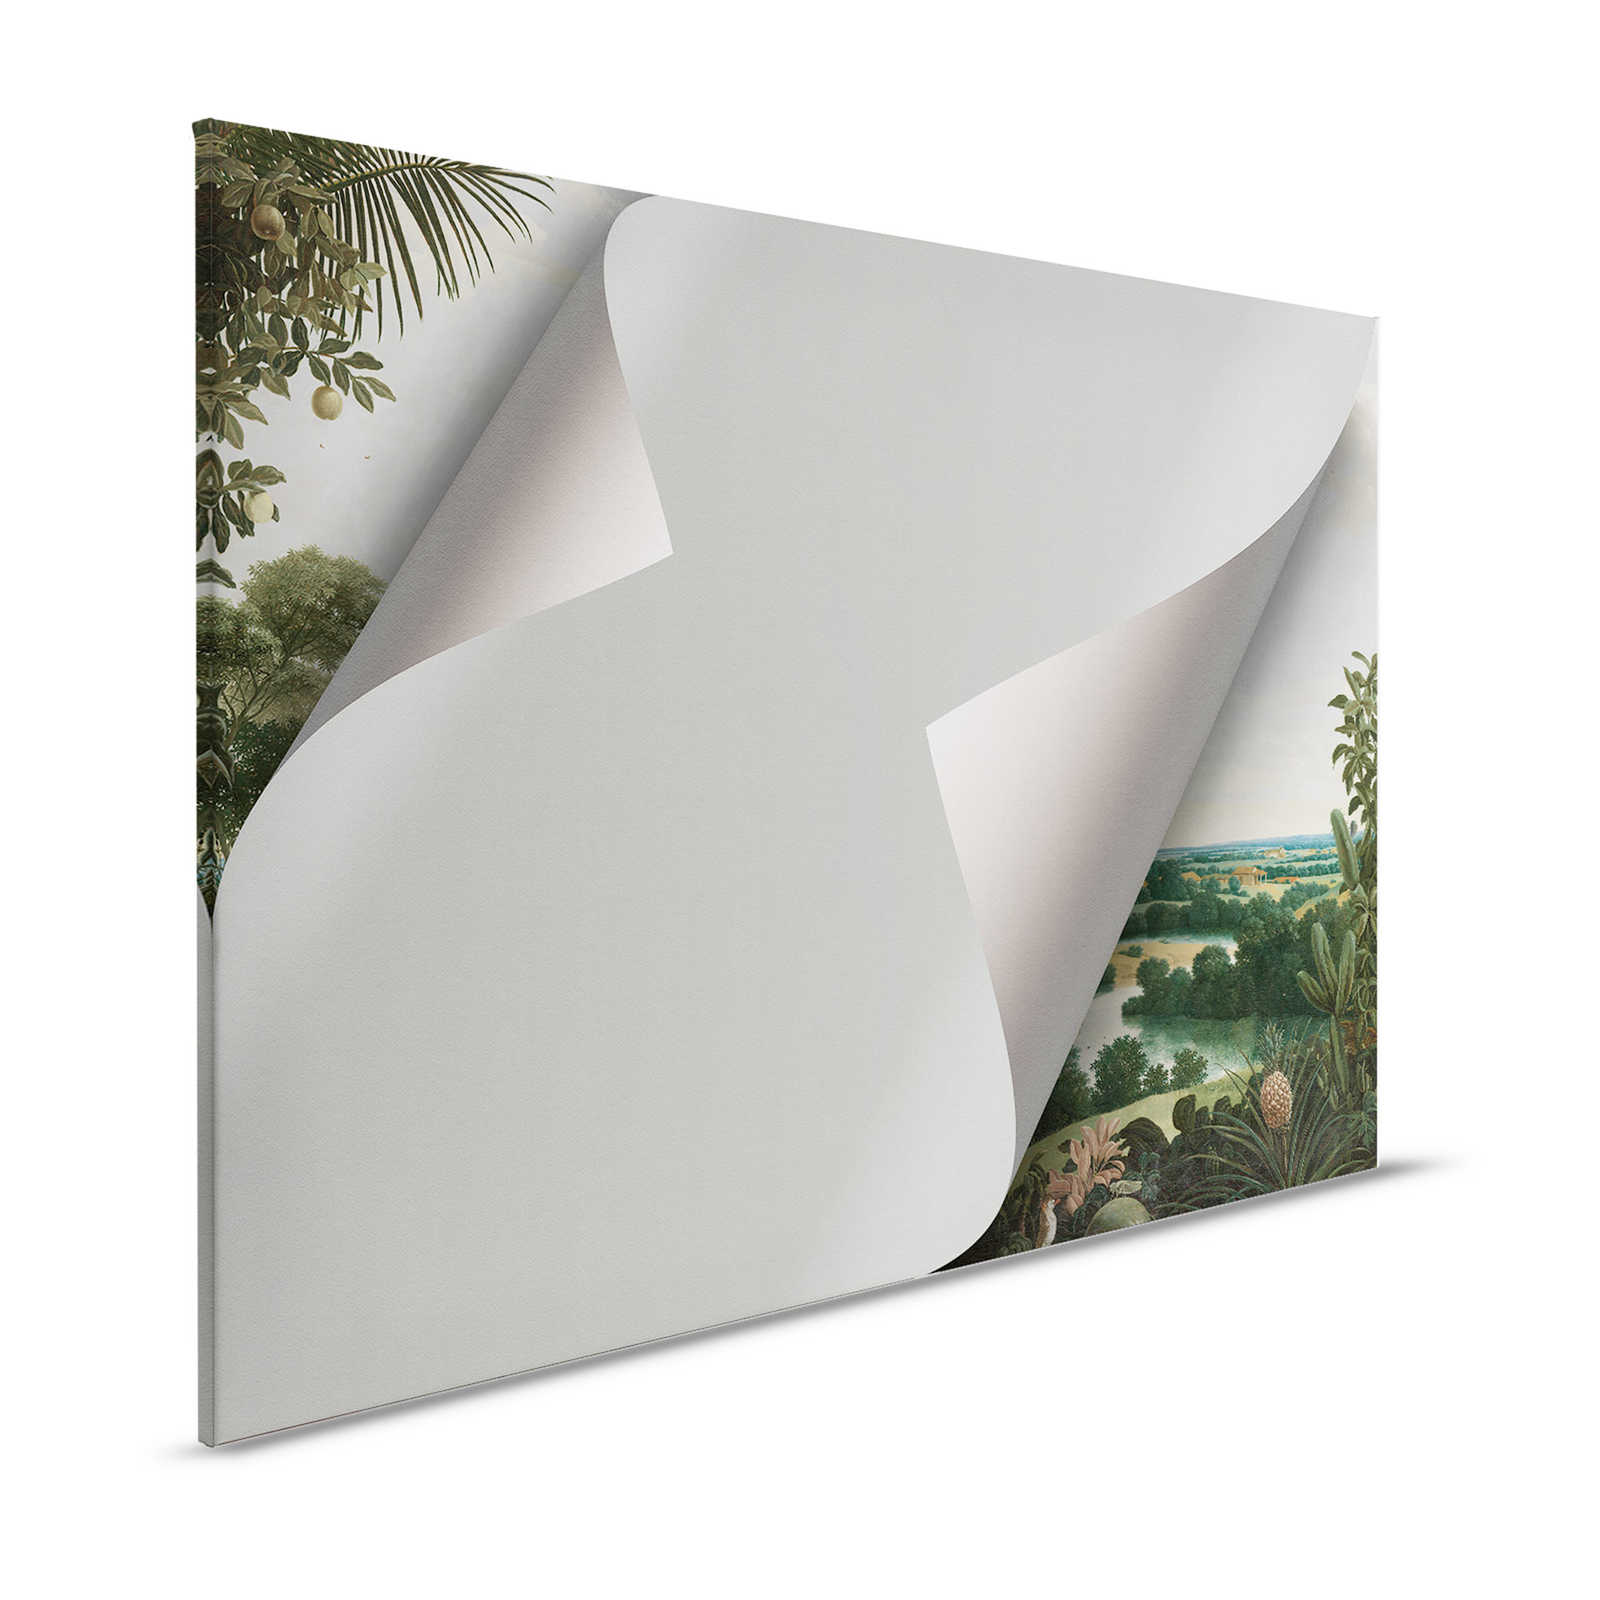 Hidden Places 1 - Canvas painting 3D effect with hidden motif - 1.20 m x 0.80 m
